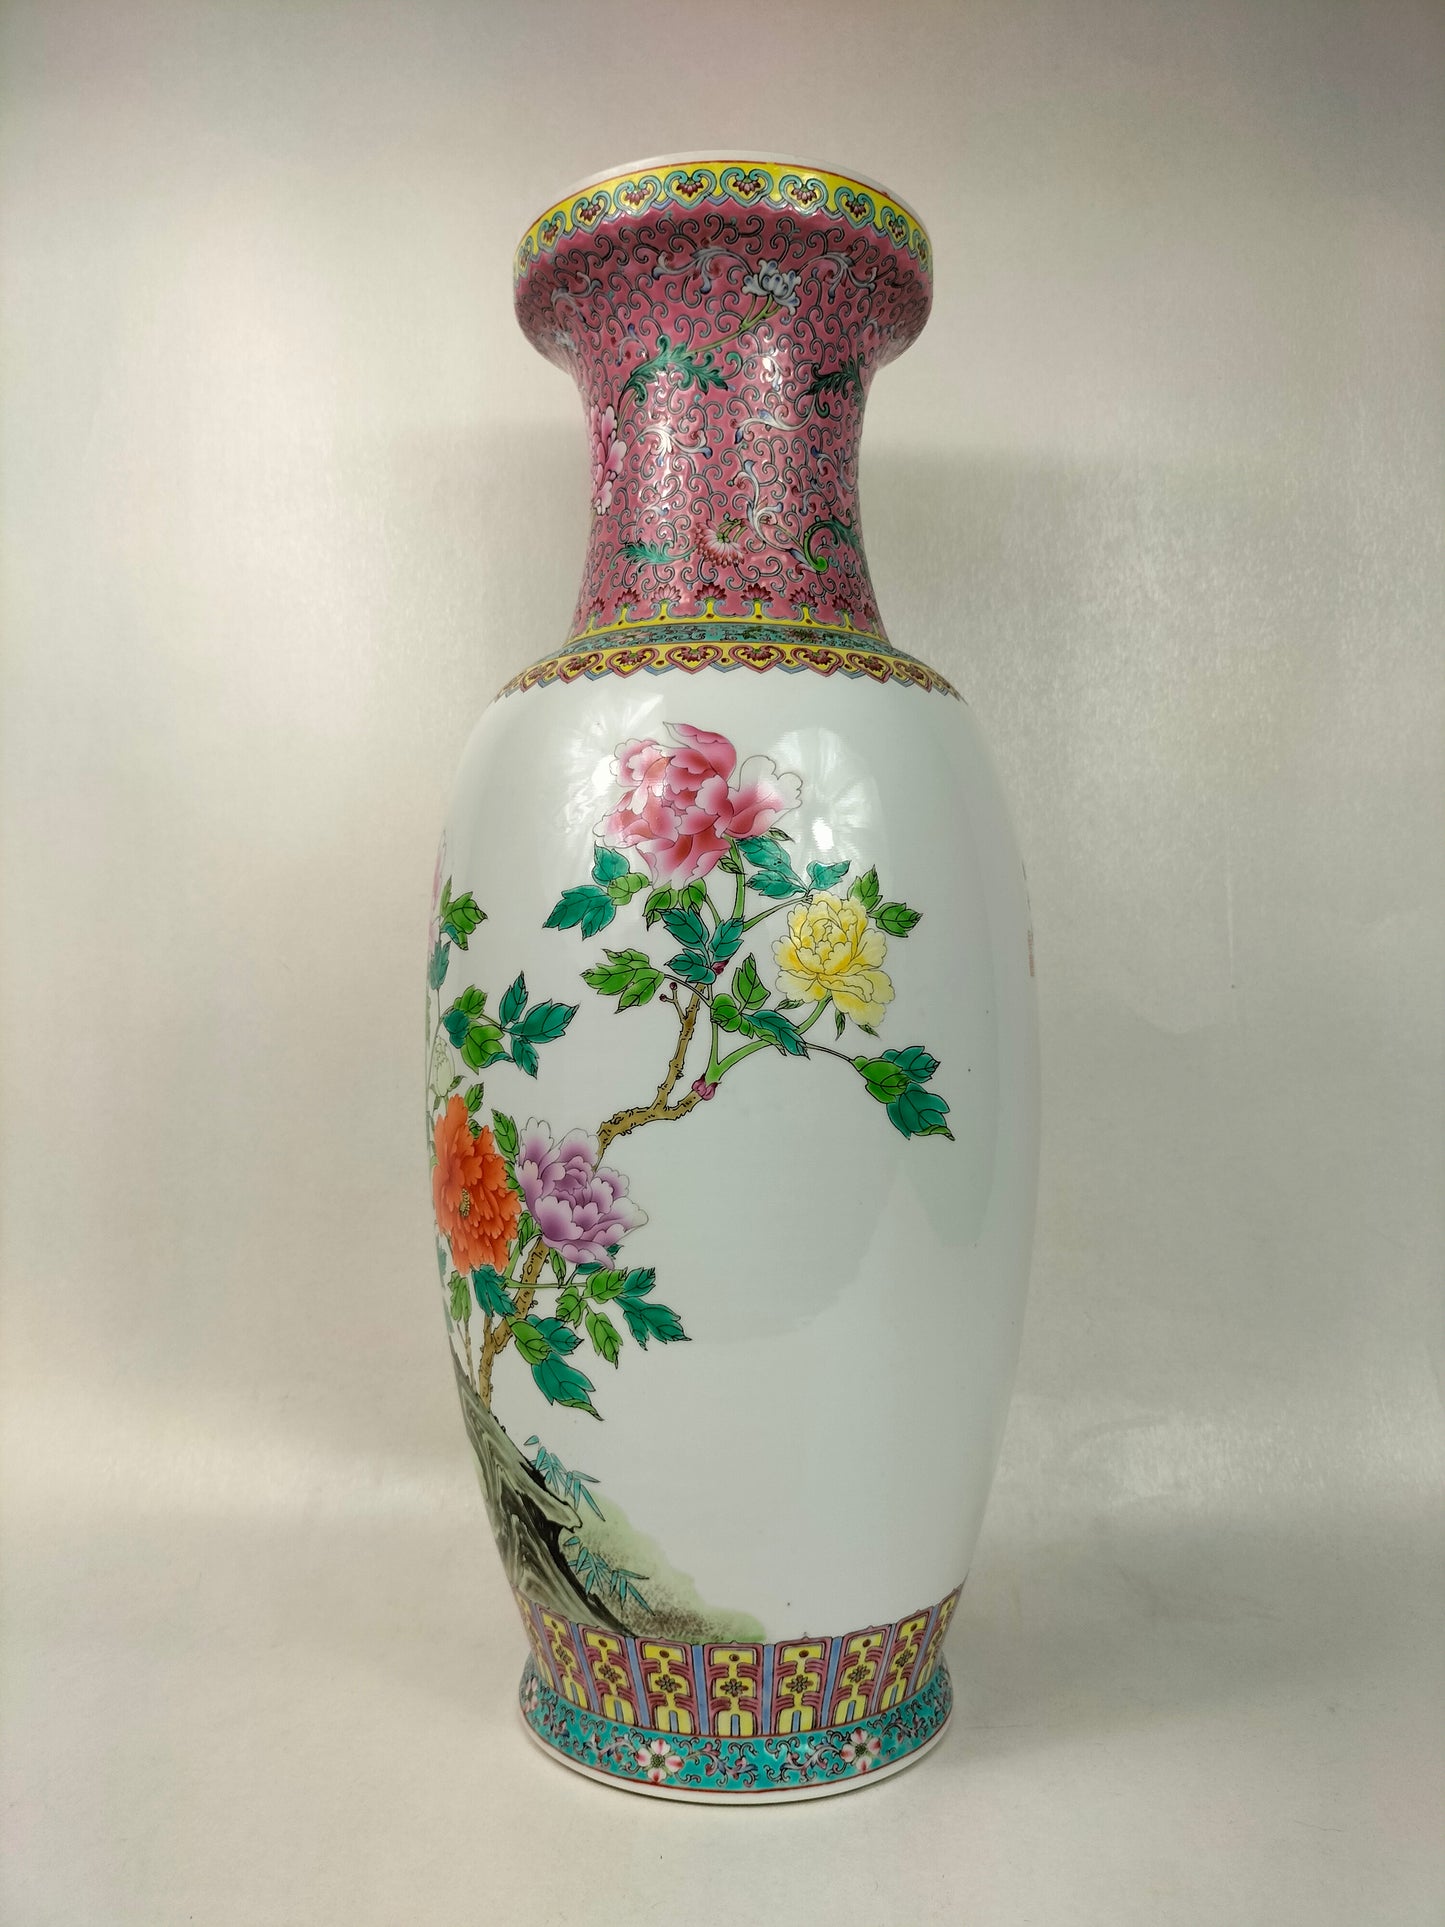 Bình hoa hồng gia đình lớn của Trung Quốc được trang trí bằng hoa // Jingdezhen - thế kỷ 20